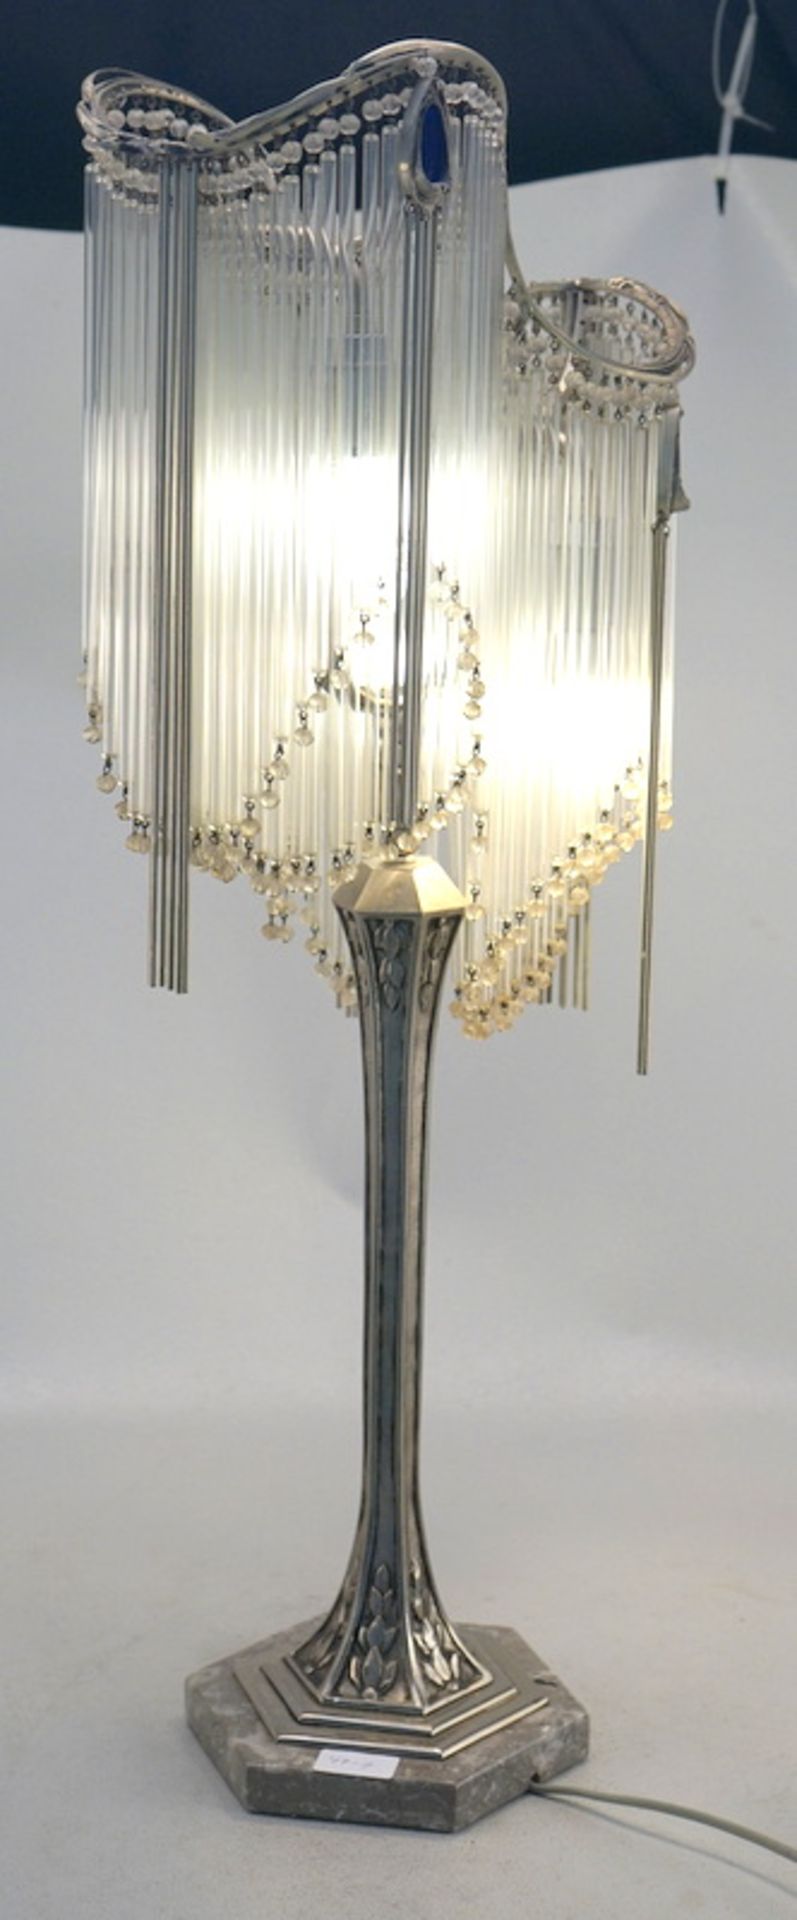 Tischlampe, Entwurf Hector Guimard, 20. Jhd. - Bild 2 aus 6